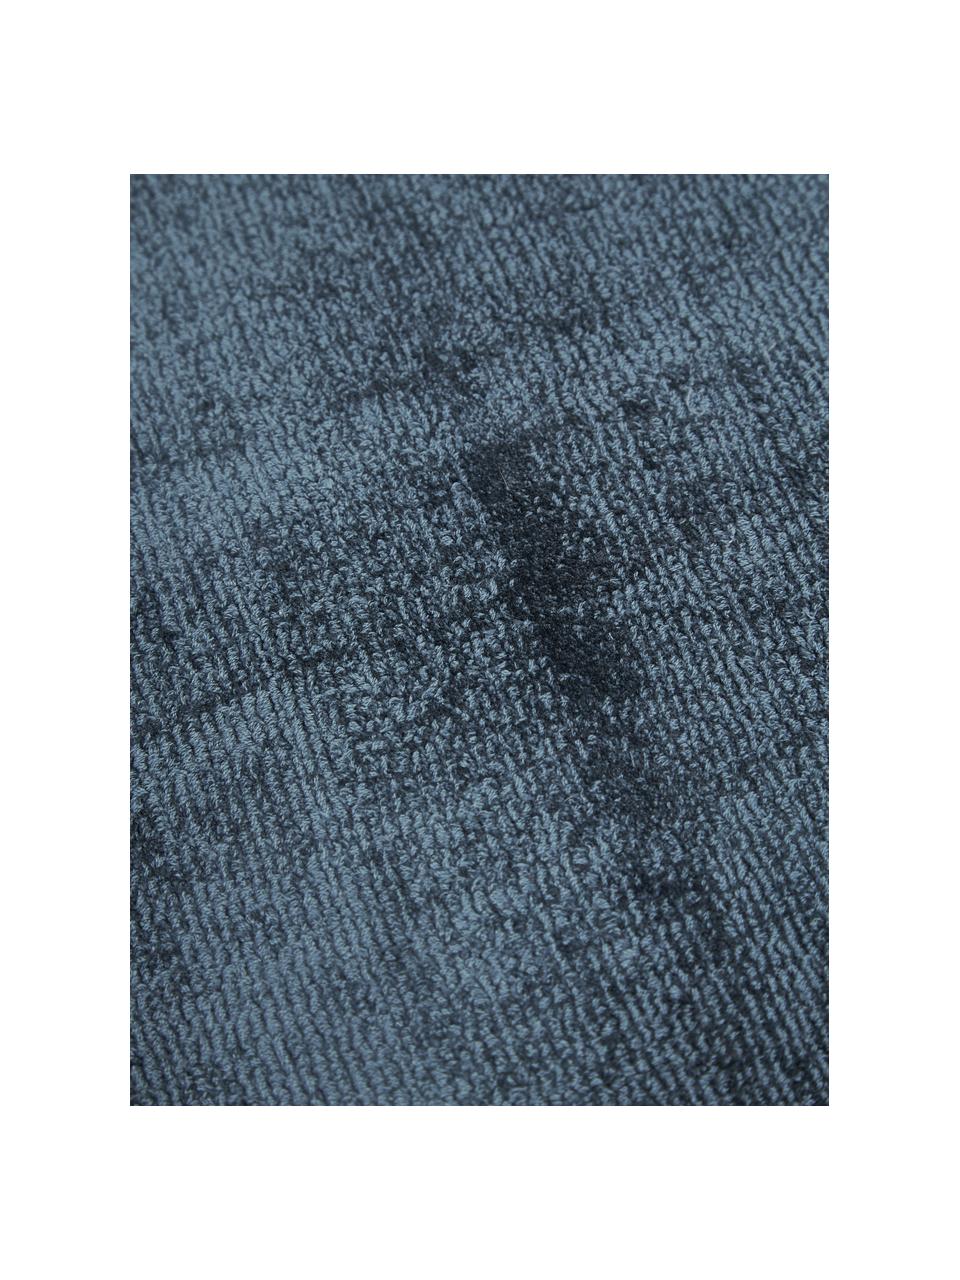 Tappeto in viscosa taftato a mano Jane, Retro: 100% cotone Il materiale , Blu scuro, Larg. 160 x Lung. 230 cm  (taglia M)